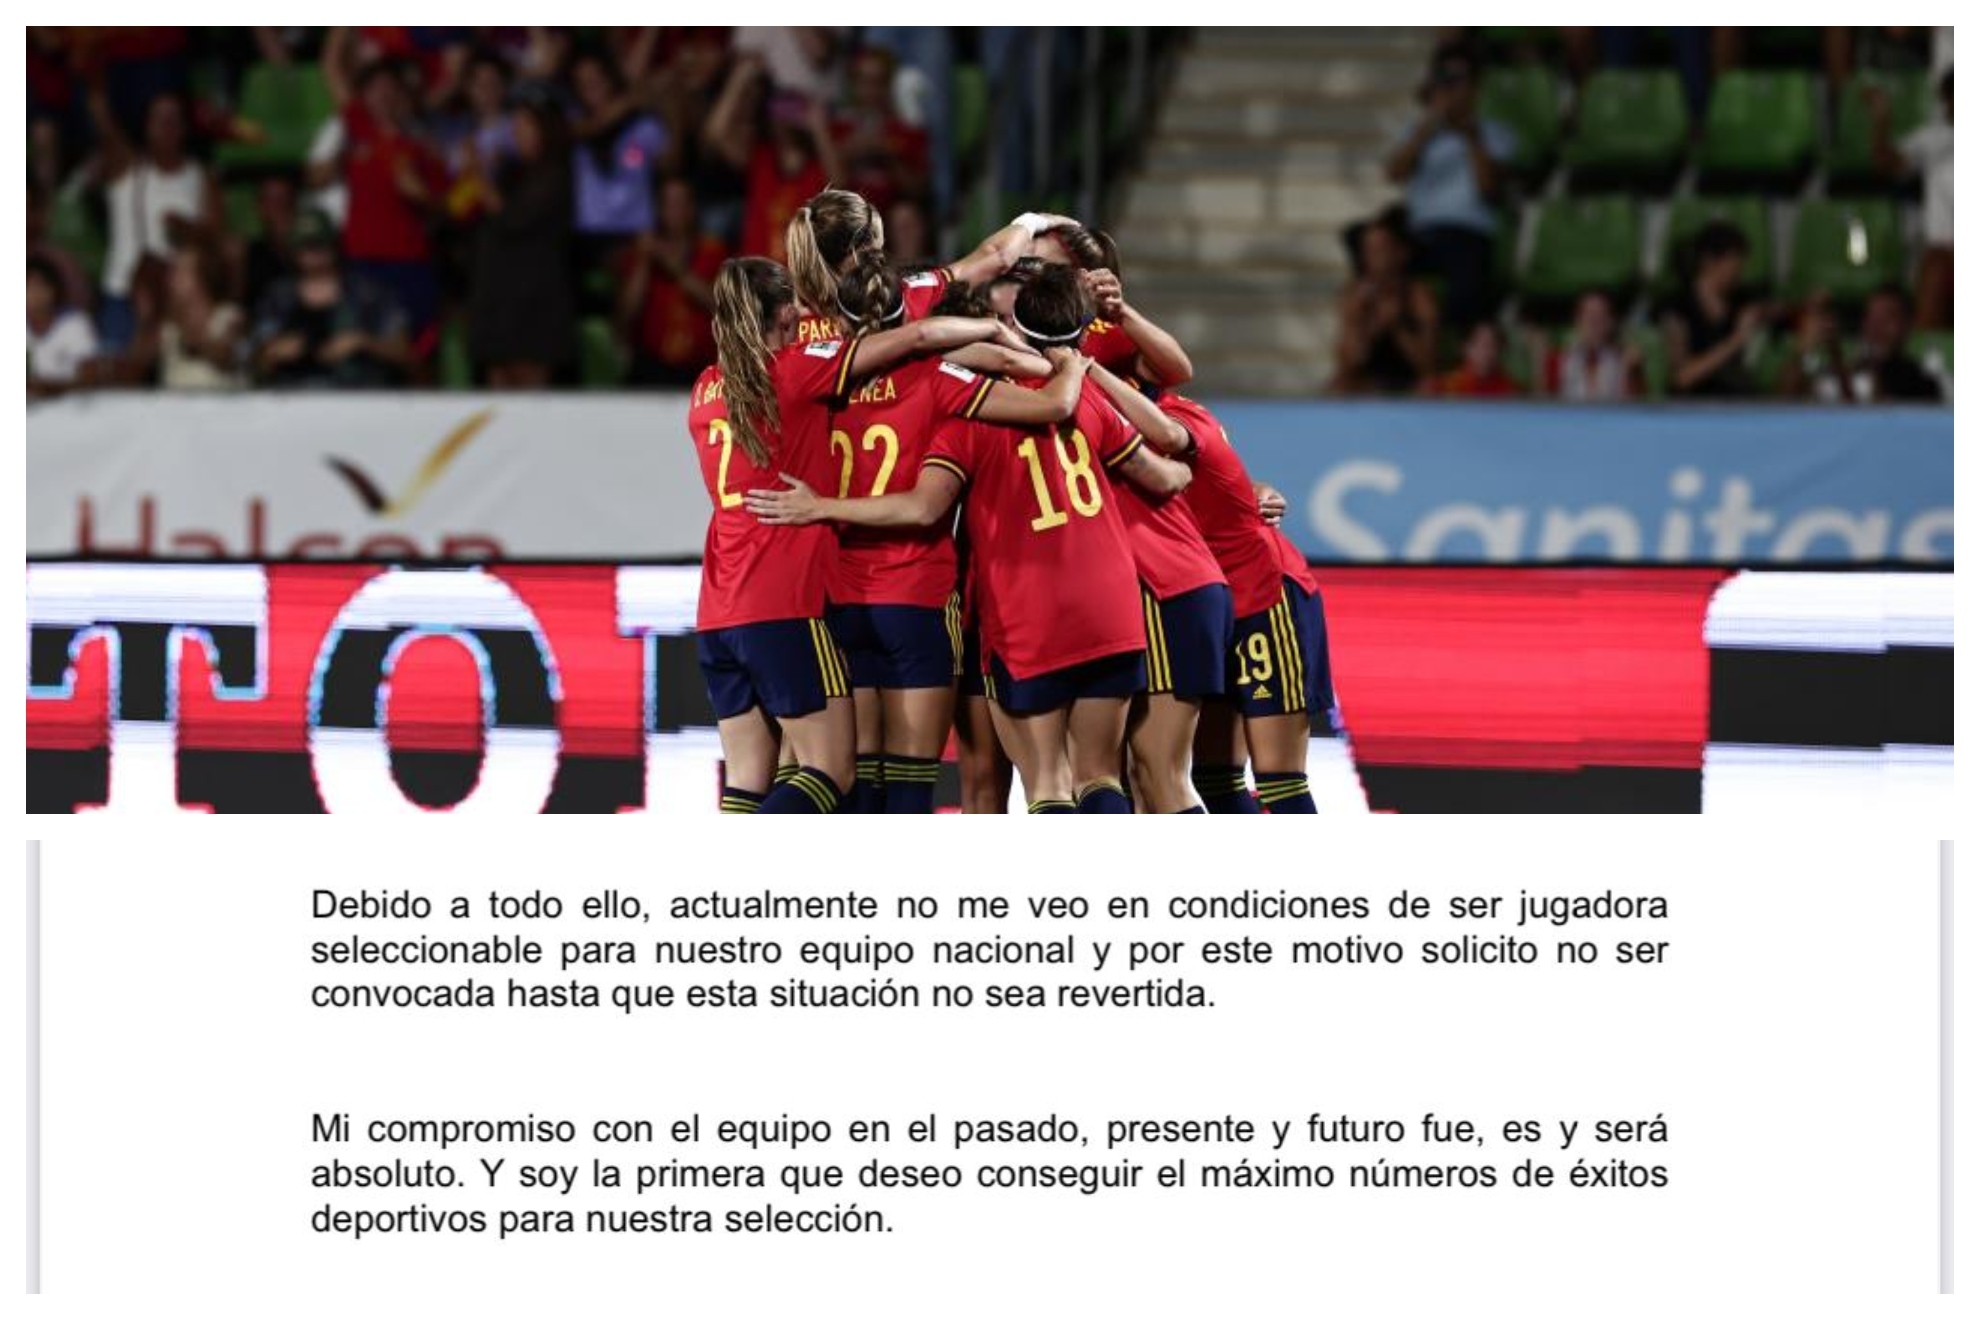 Un montaje con un fragmento del email y una imagen de las jugadoras celebrando un gol.